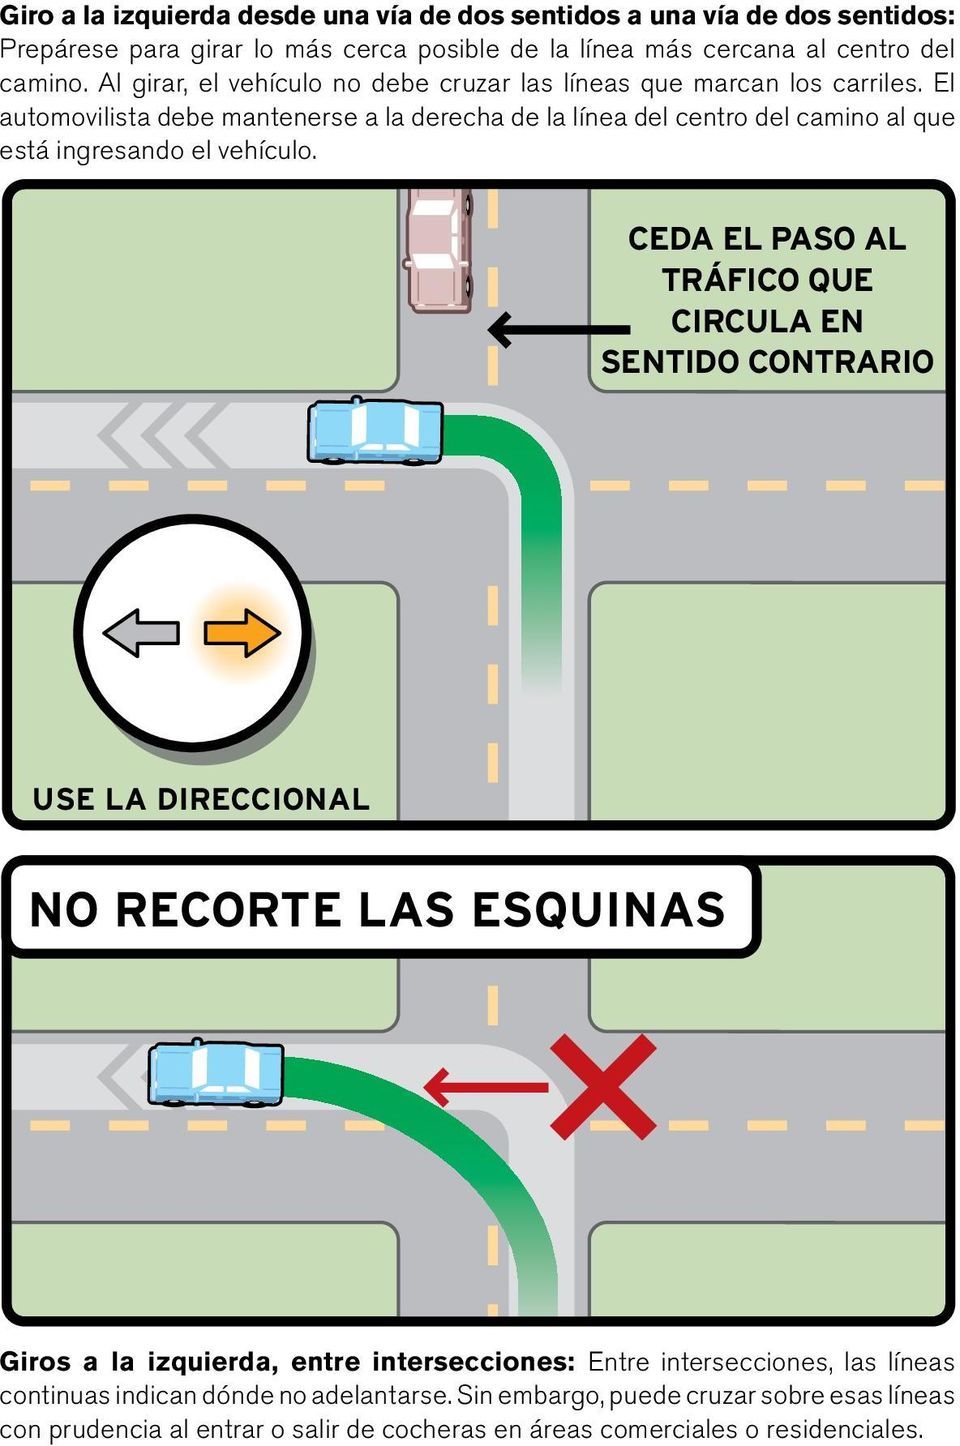 El automovilista debe mantenerse a la derecha de la línea del centro del camino al que está ingresando el vehículo.